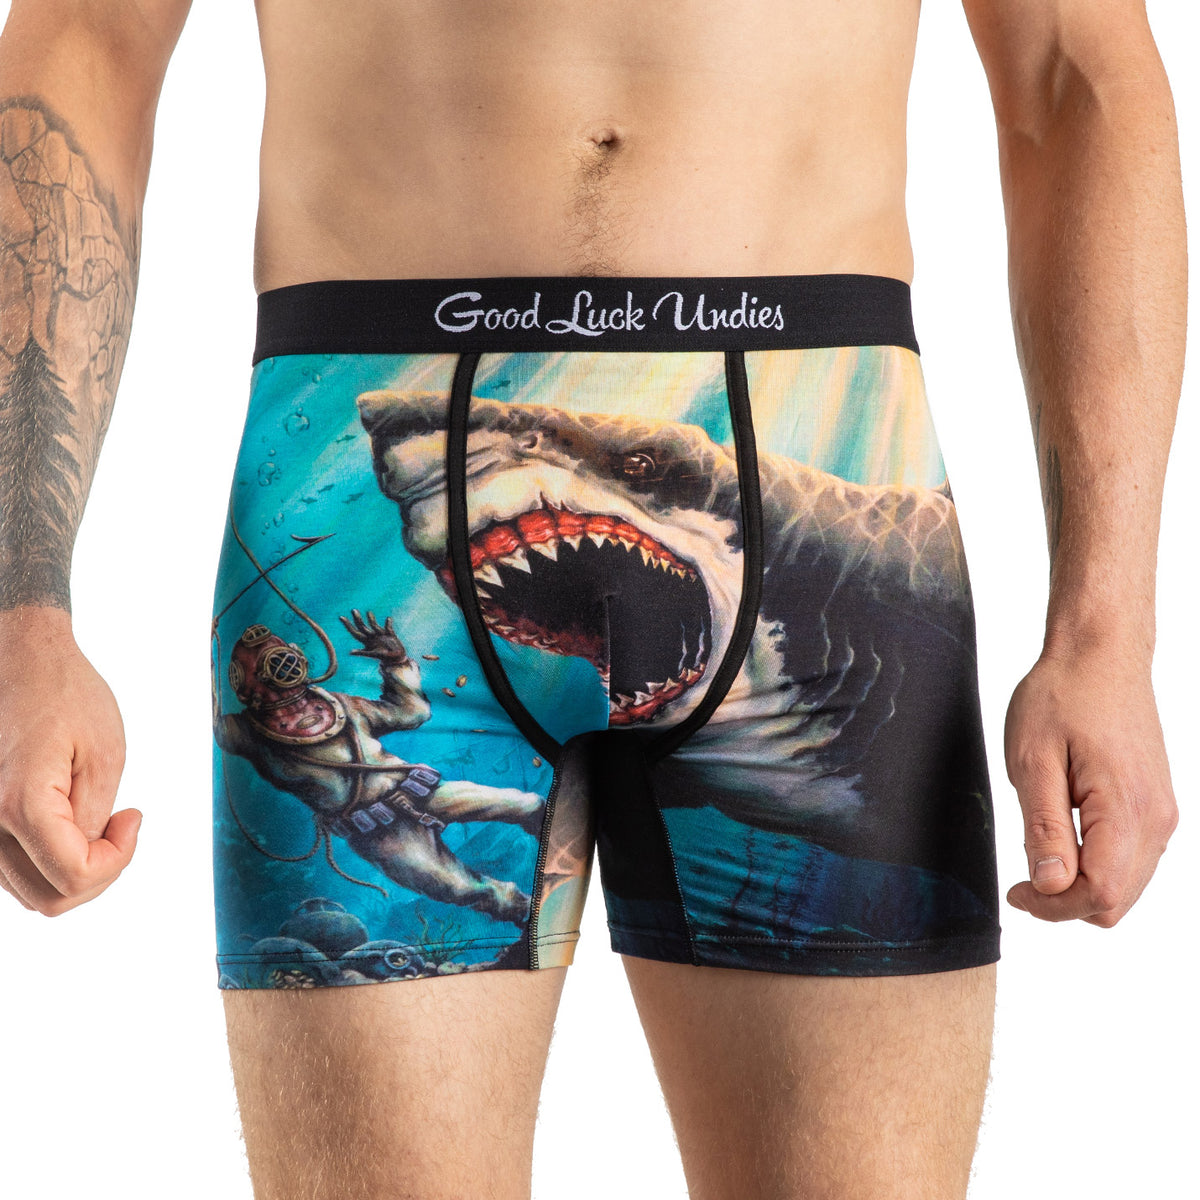 JHKKU Shark Men's Brief Underwear Lightweight Stretchy Comfortable